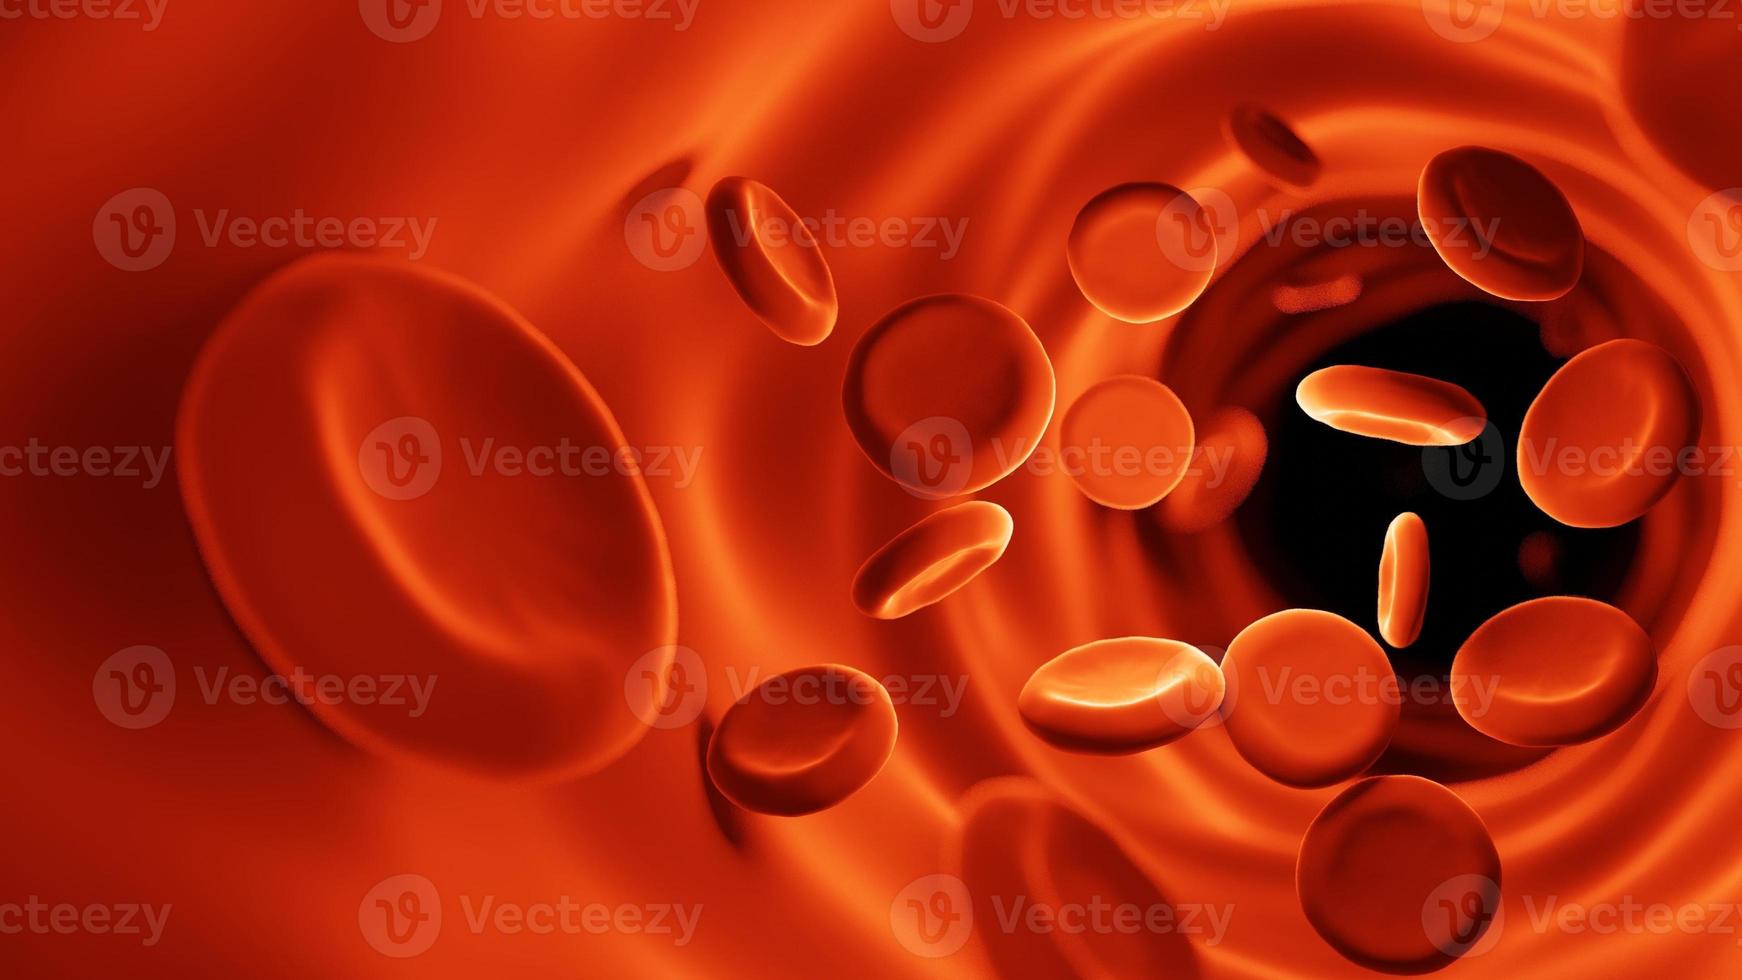 röda blodkroppar i blodomloppet. medicin och biologi vetenskaplig forskning, röda blodkroppar i en ven eller artär, flödar inuti en levande organism.seen micro.3d rendering illustration. foto